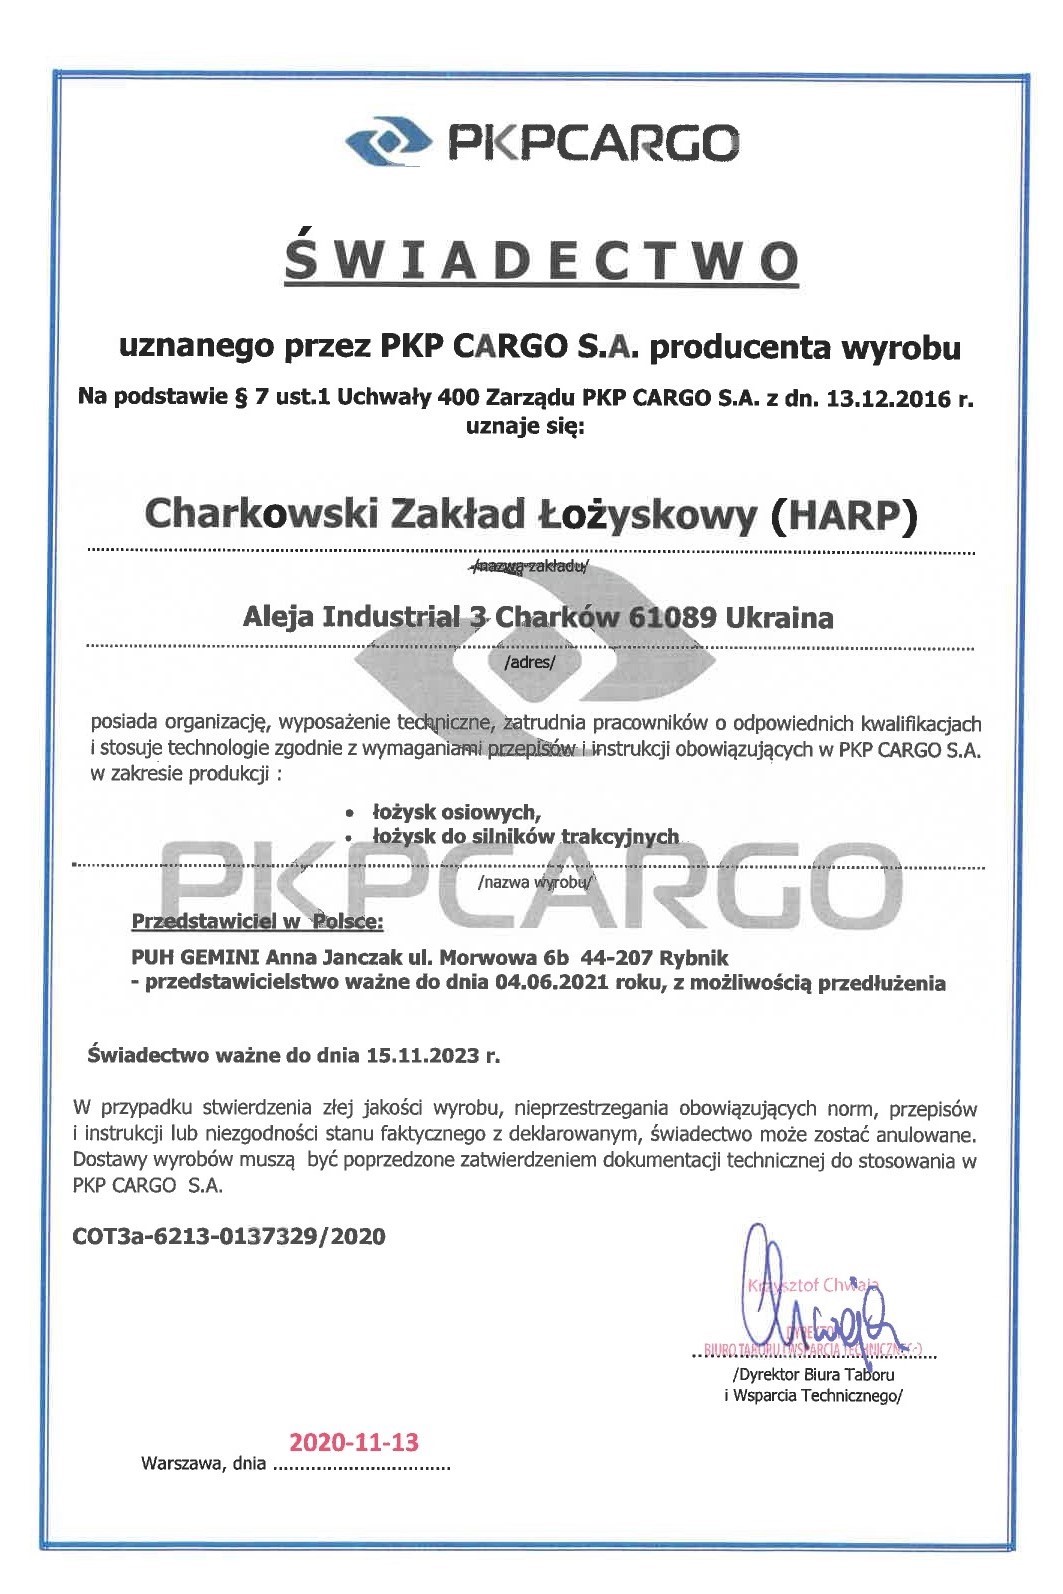 Сертификат PKP CARGO11111111111.jpg